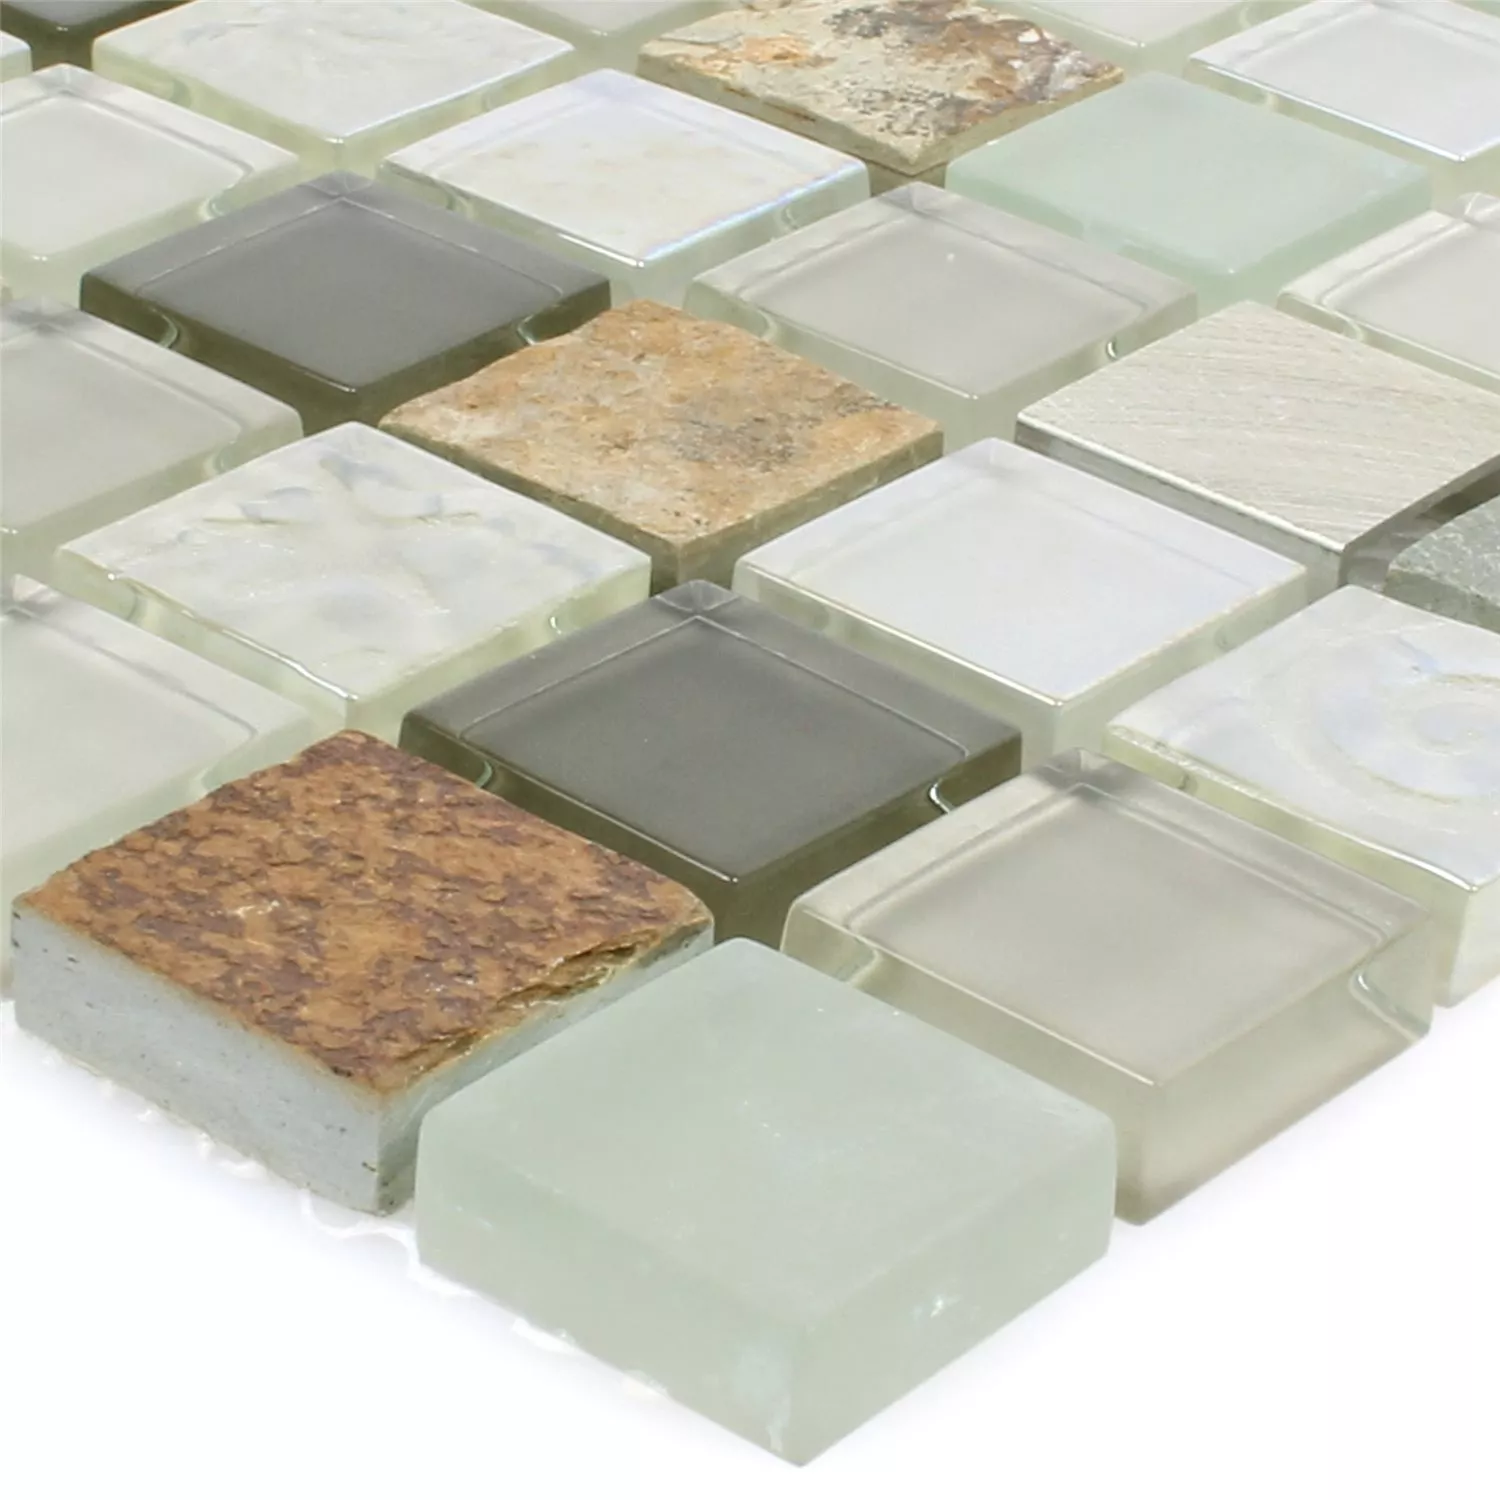 Muster von Mosaikfliesen Naturstein Glas Metall Mix Lockhart